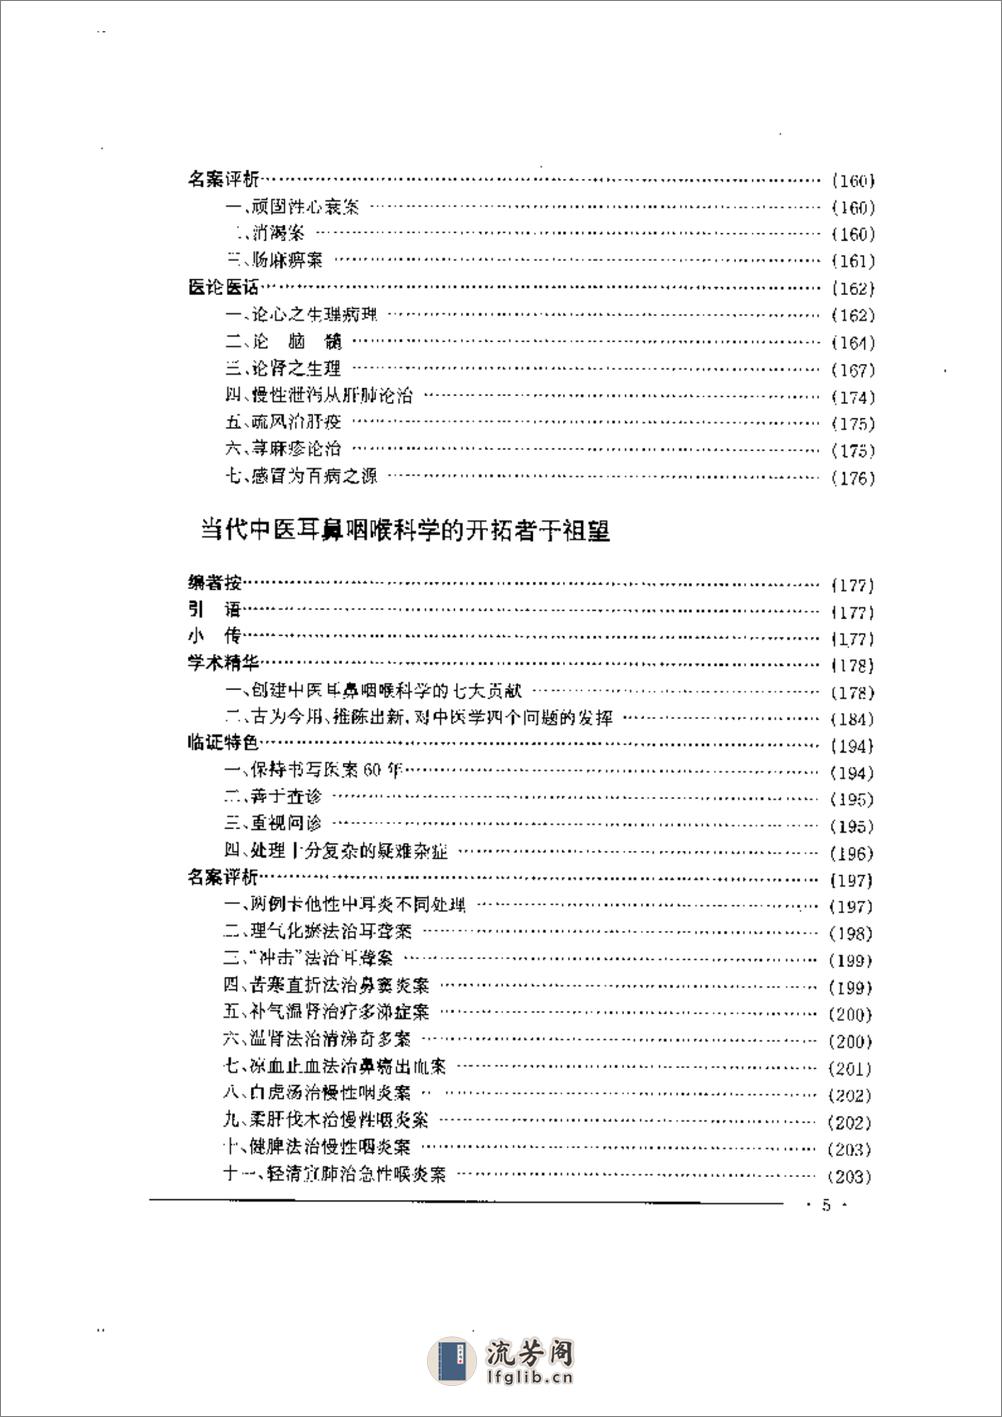 中国名老中医药专家学术经验集  2 - 第5页预览图